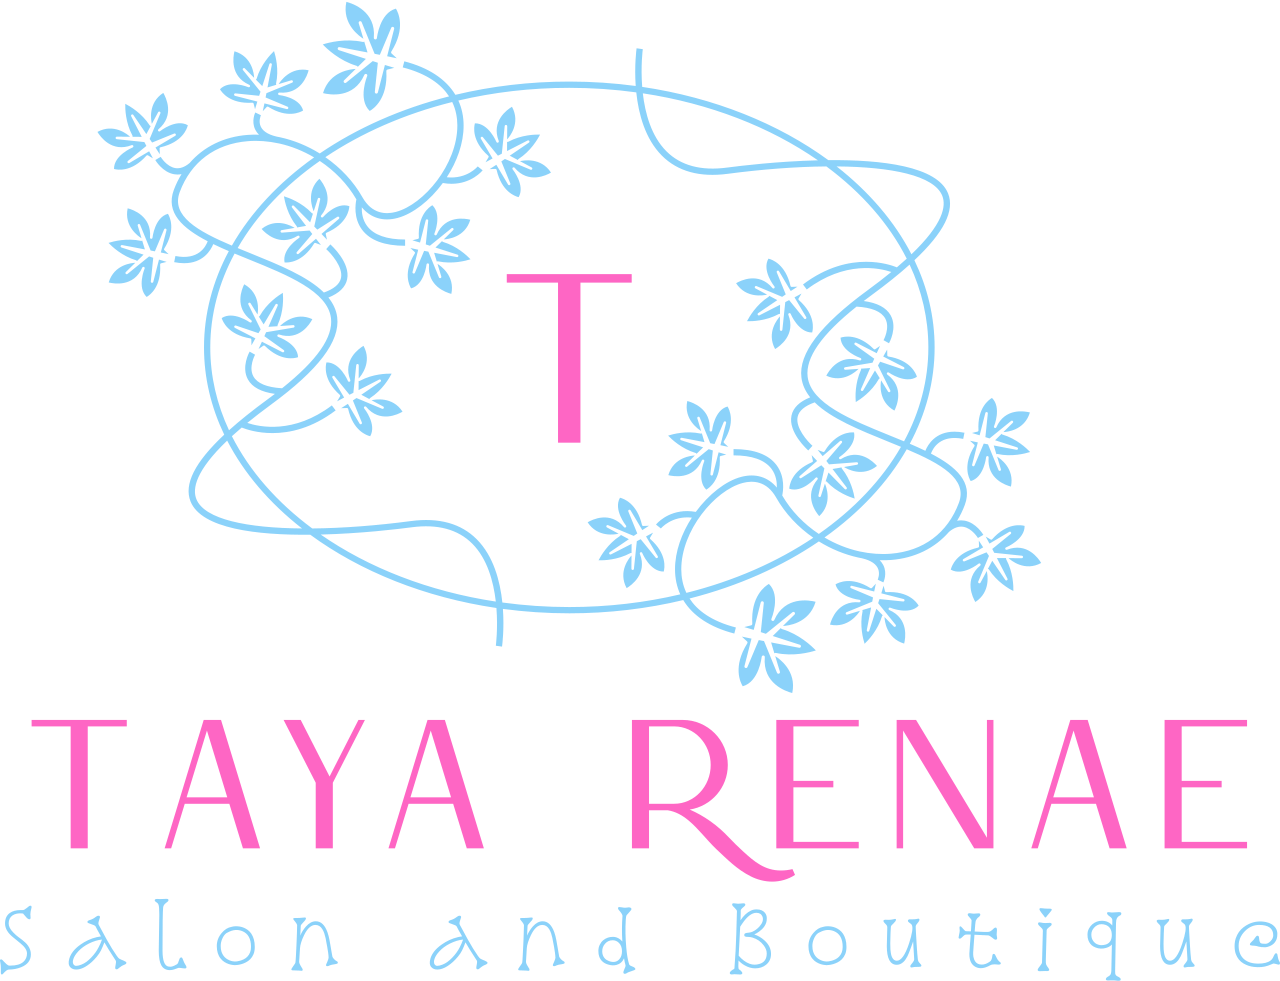 Taya Renae's logo